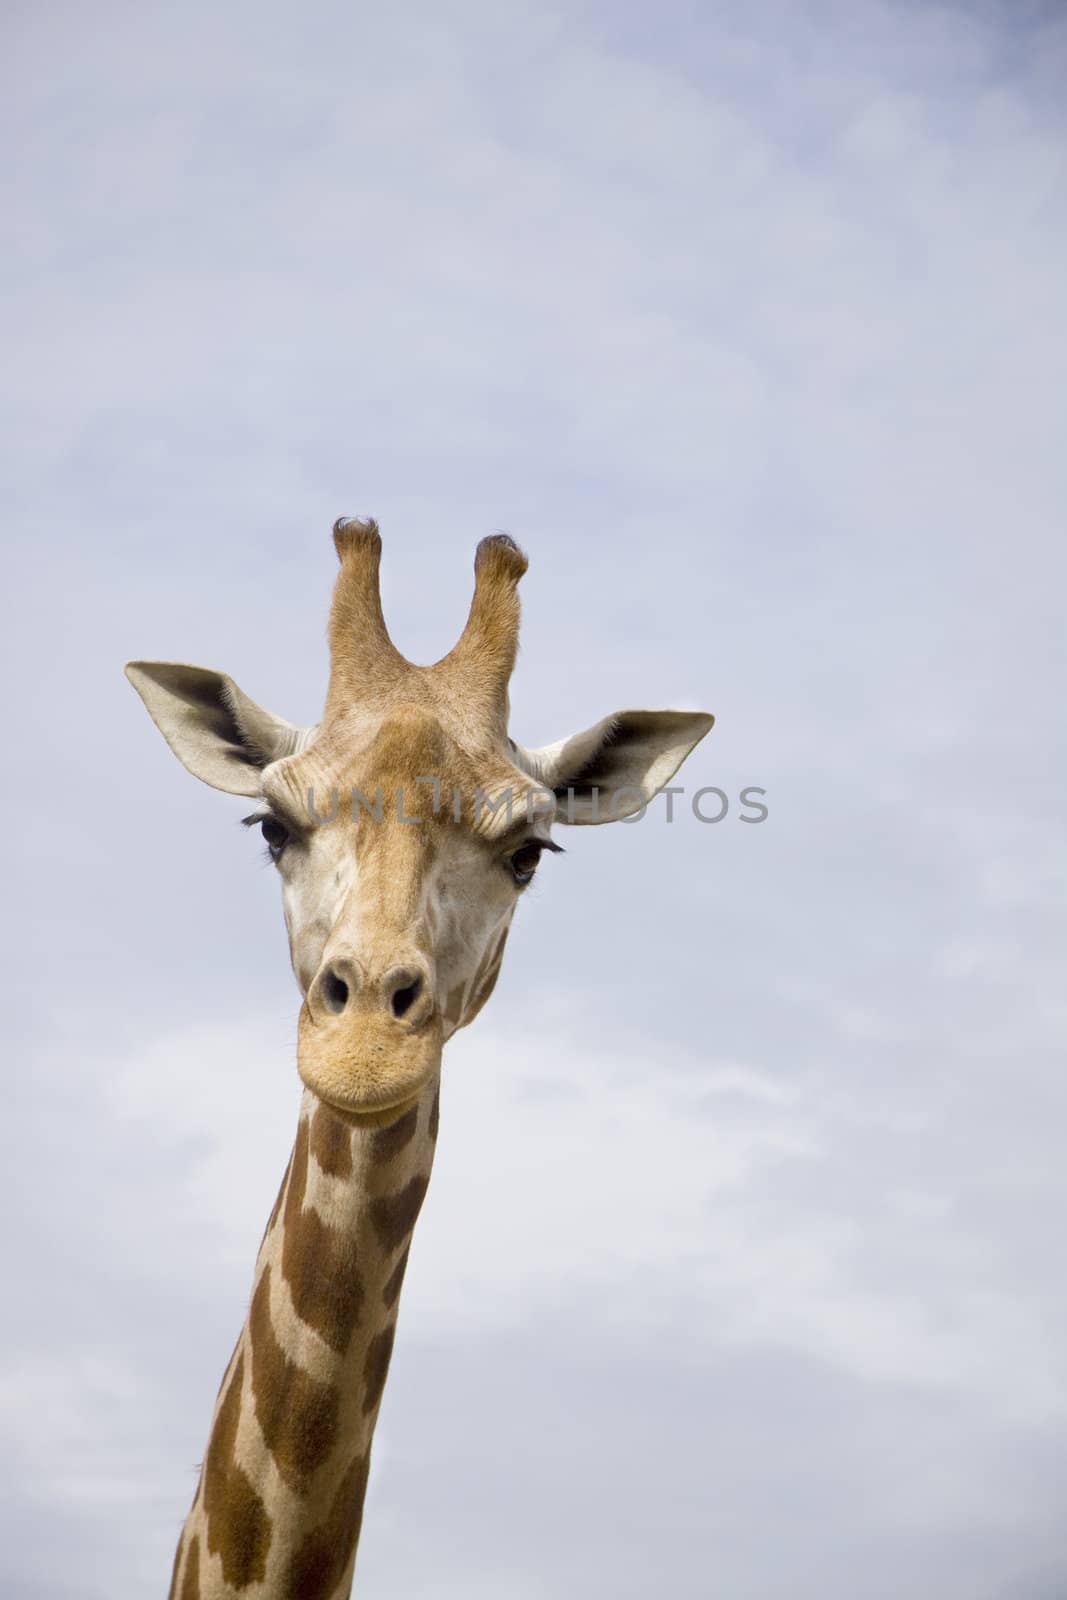 Giraffe against blue sky by annems